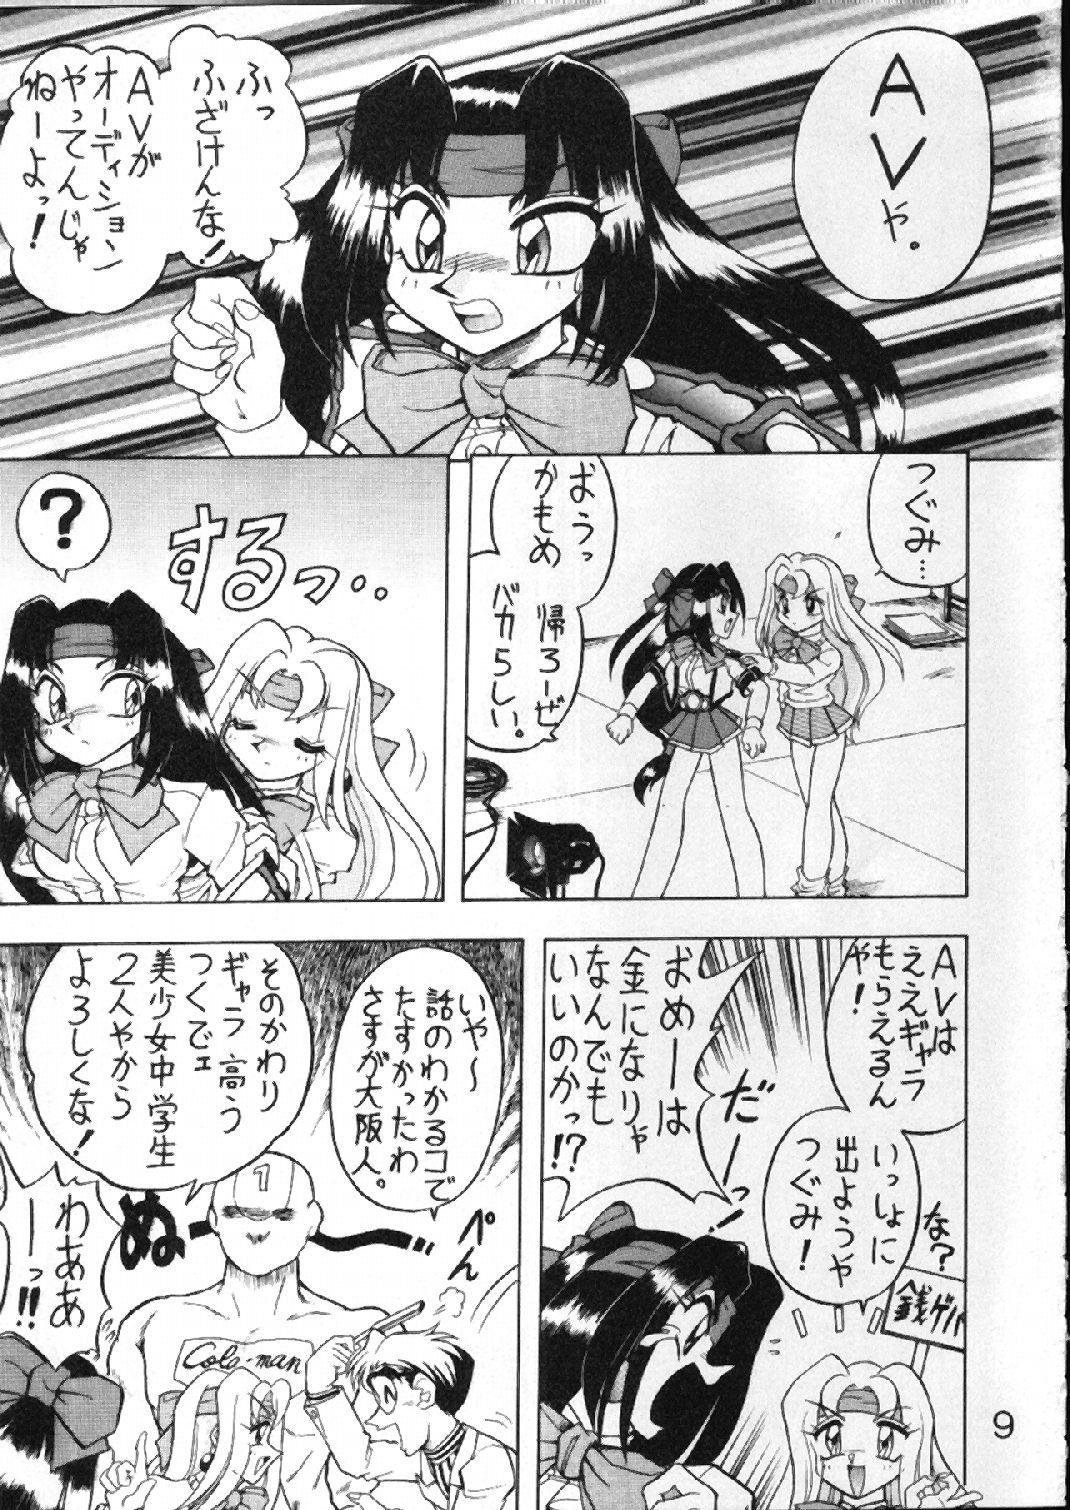 Masturbates Buchizan - Akihabara dennou gumi Kare kano Grandma - Page 10